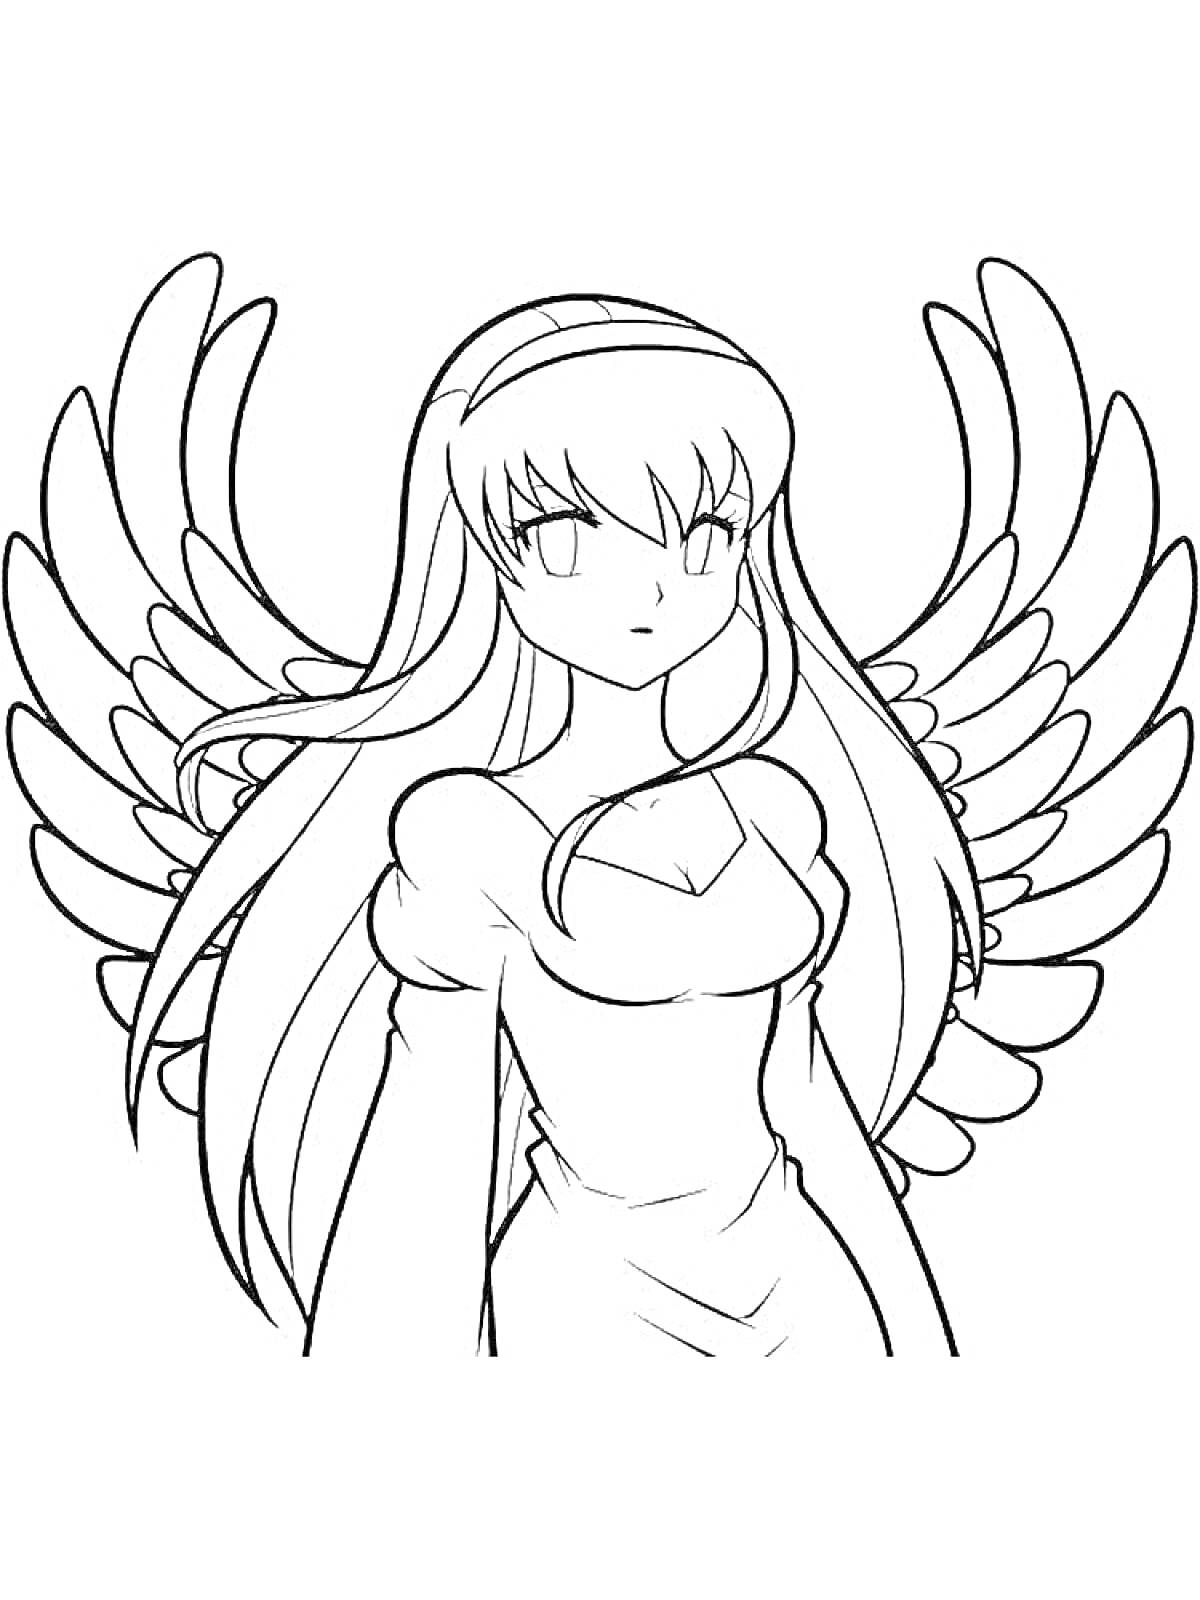 Раскраска Аниме ангел с длинными волосами и большими крыльями